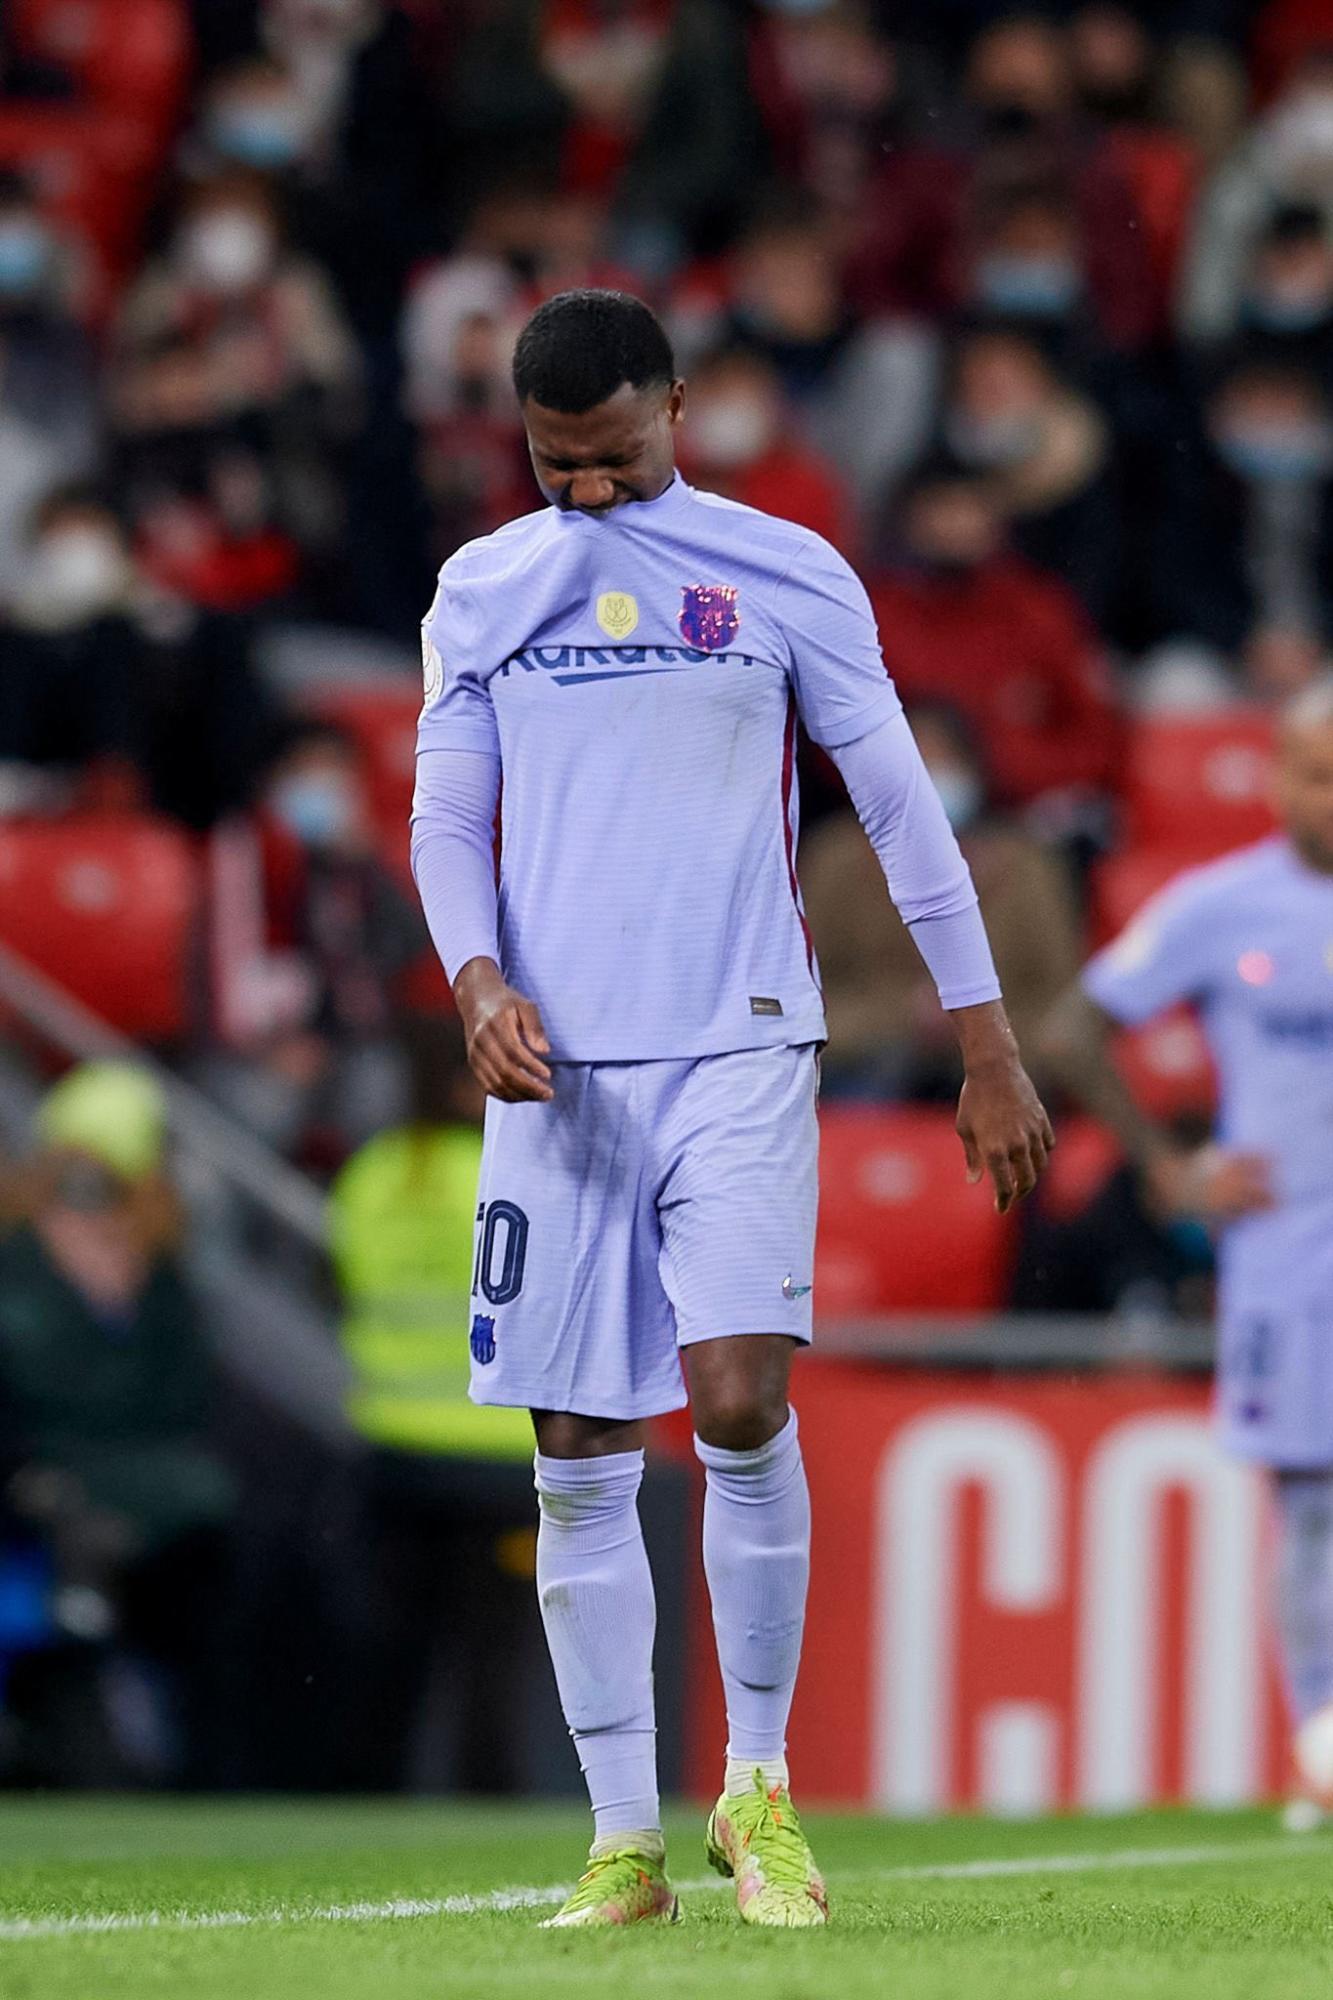 Dolorosas imágenes: Ansu Fati se rompe y sale entre lágrimas en la debacle del Barcelona frente al Athletic en Copa del Rey